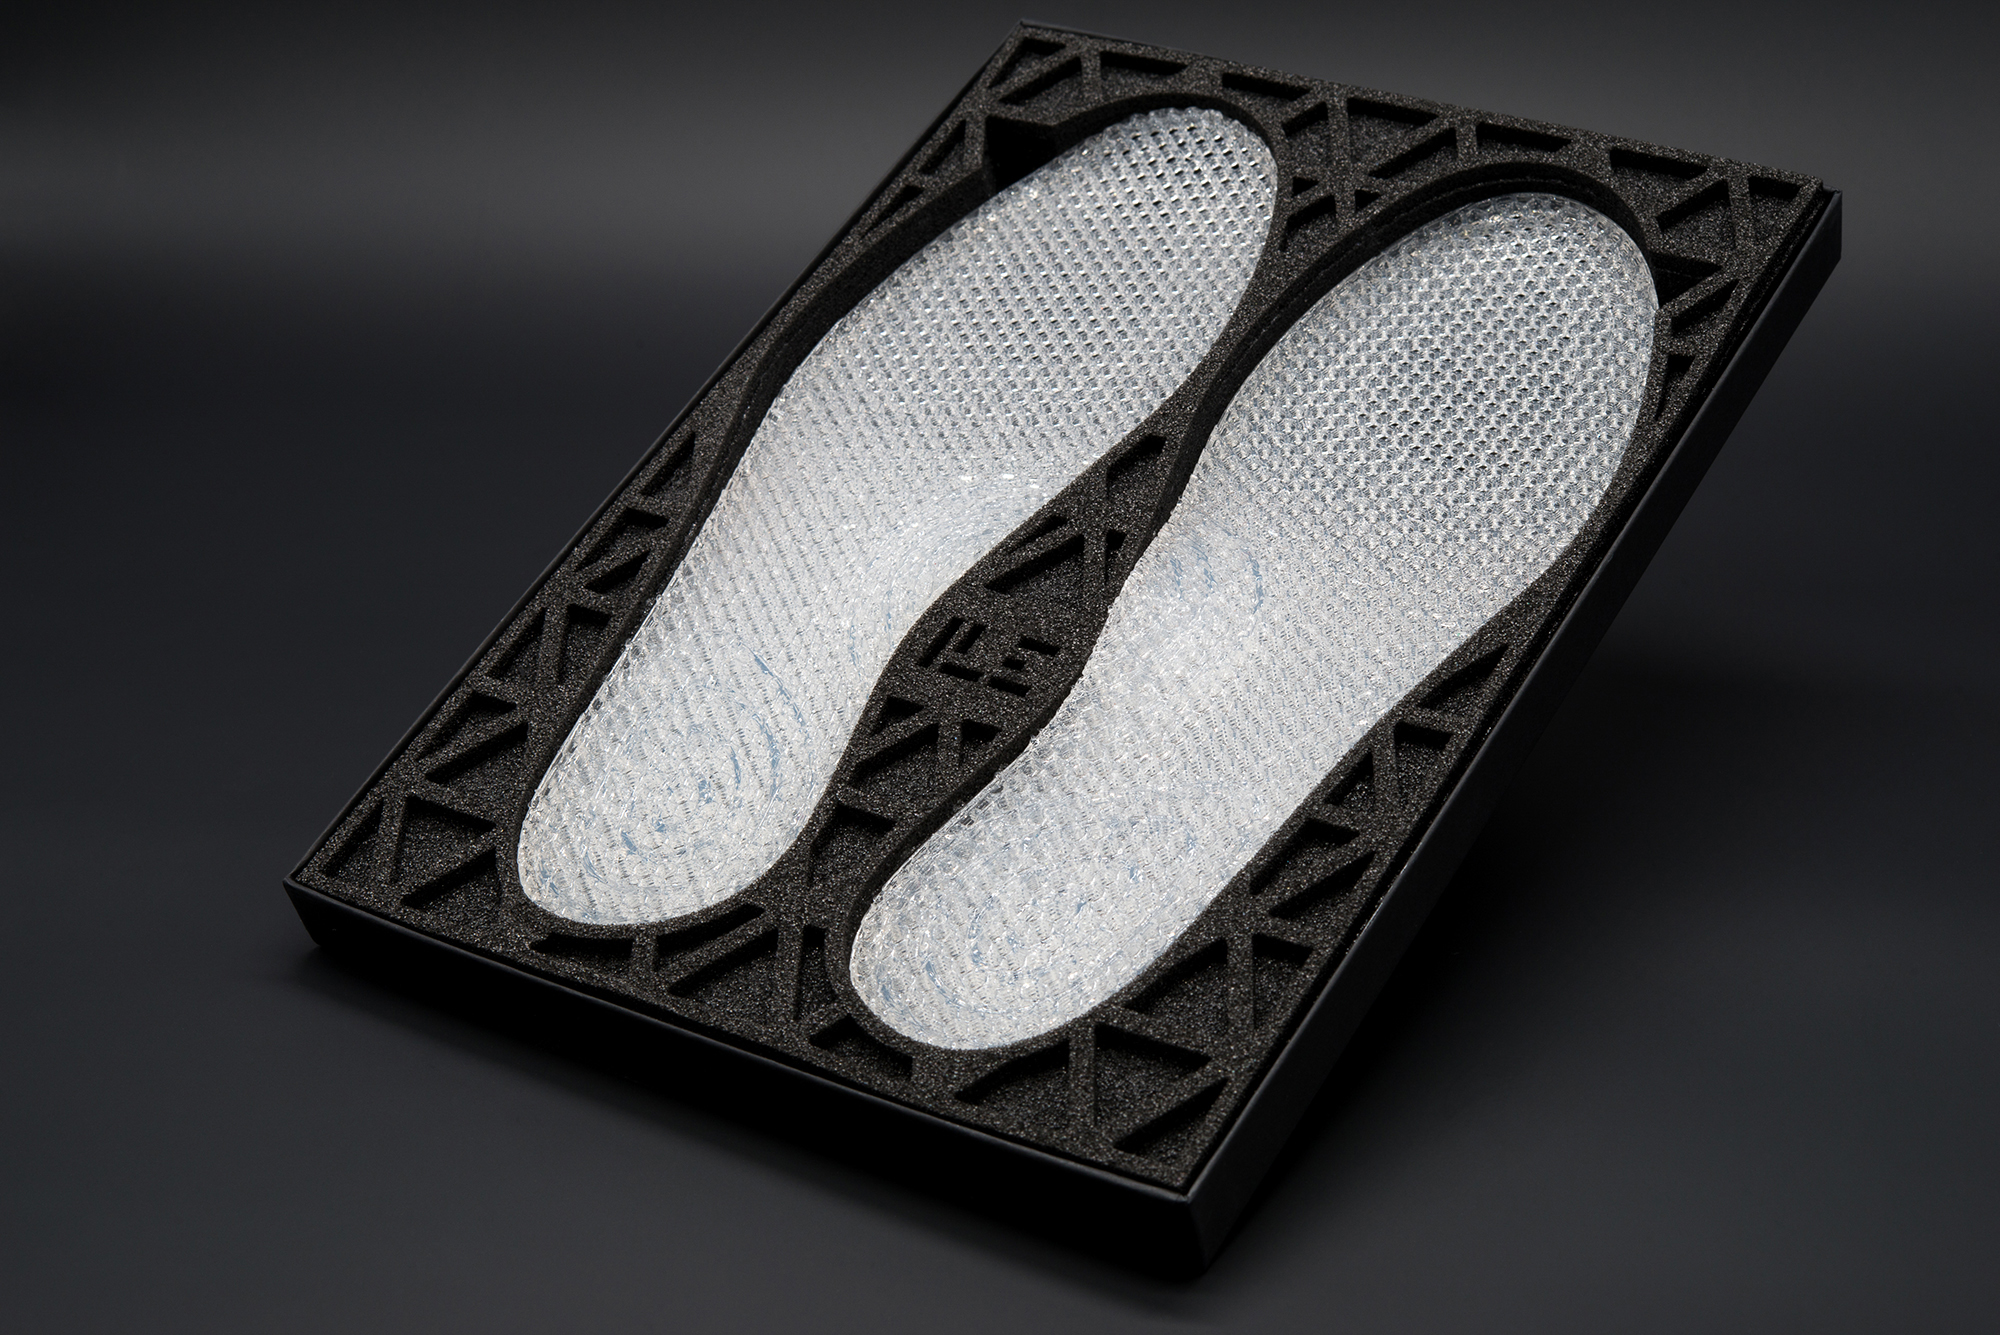 Три подошва. Ecco 3d Print. 3d обувь heignt. Ecco 3d Printing. 3д стельки ортопедические самонастраиваемые.